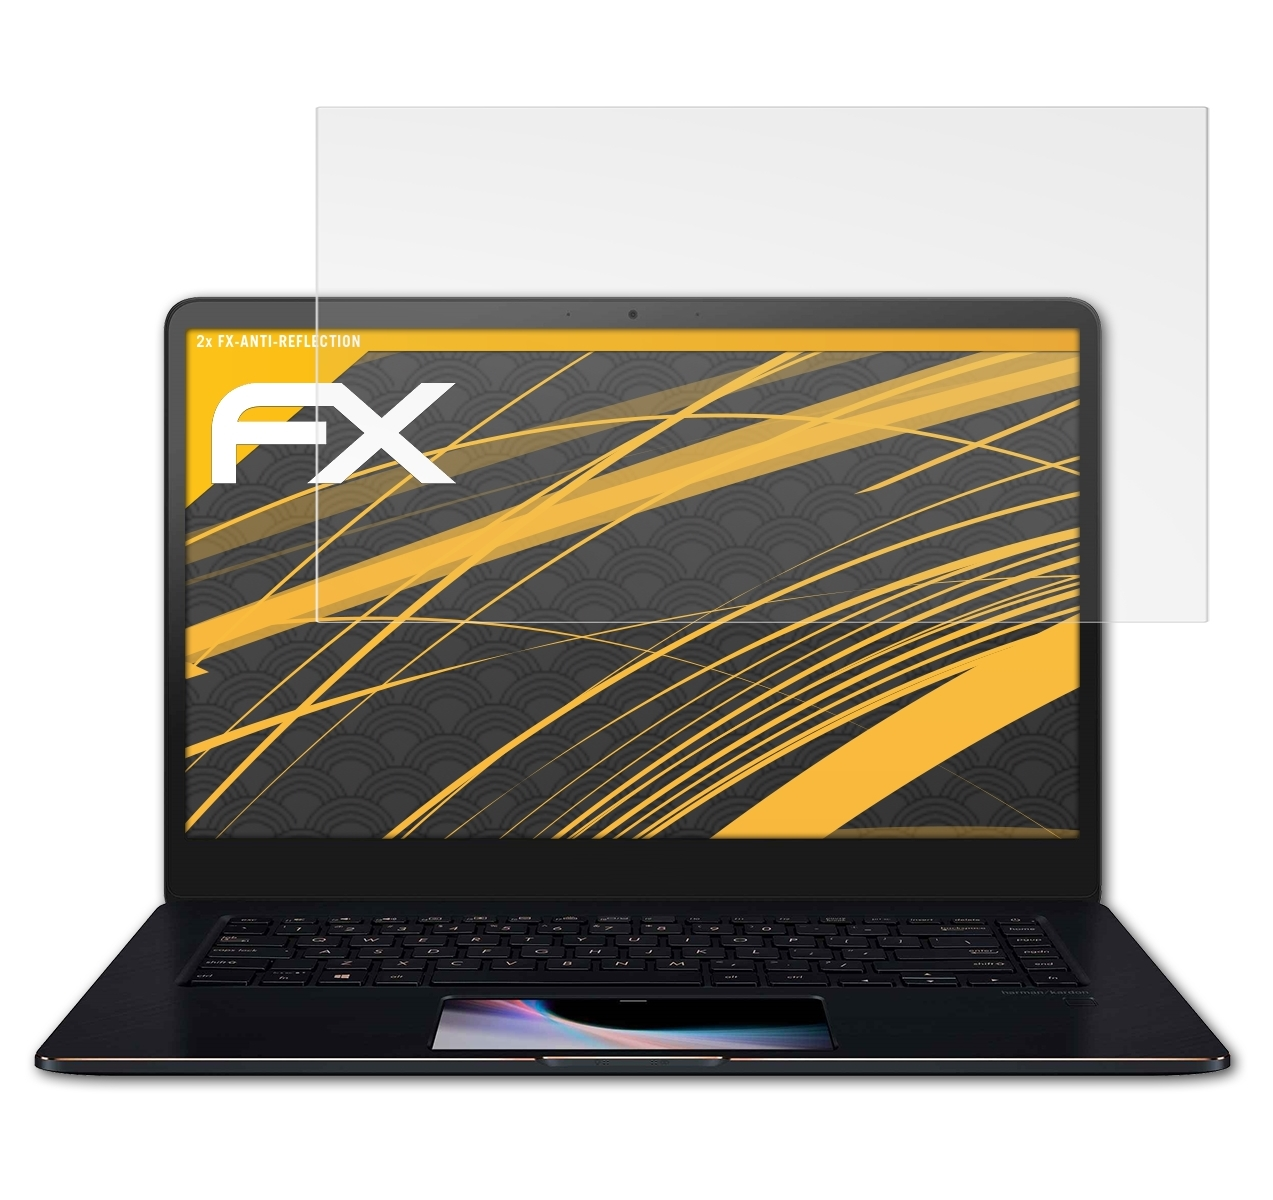 ATFOLIX Displayschutz(für Pro ZenBook 15 Asus (UX550GD)) FX-Antireflex 2x